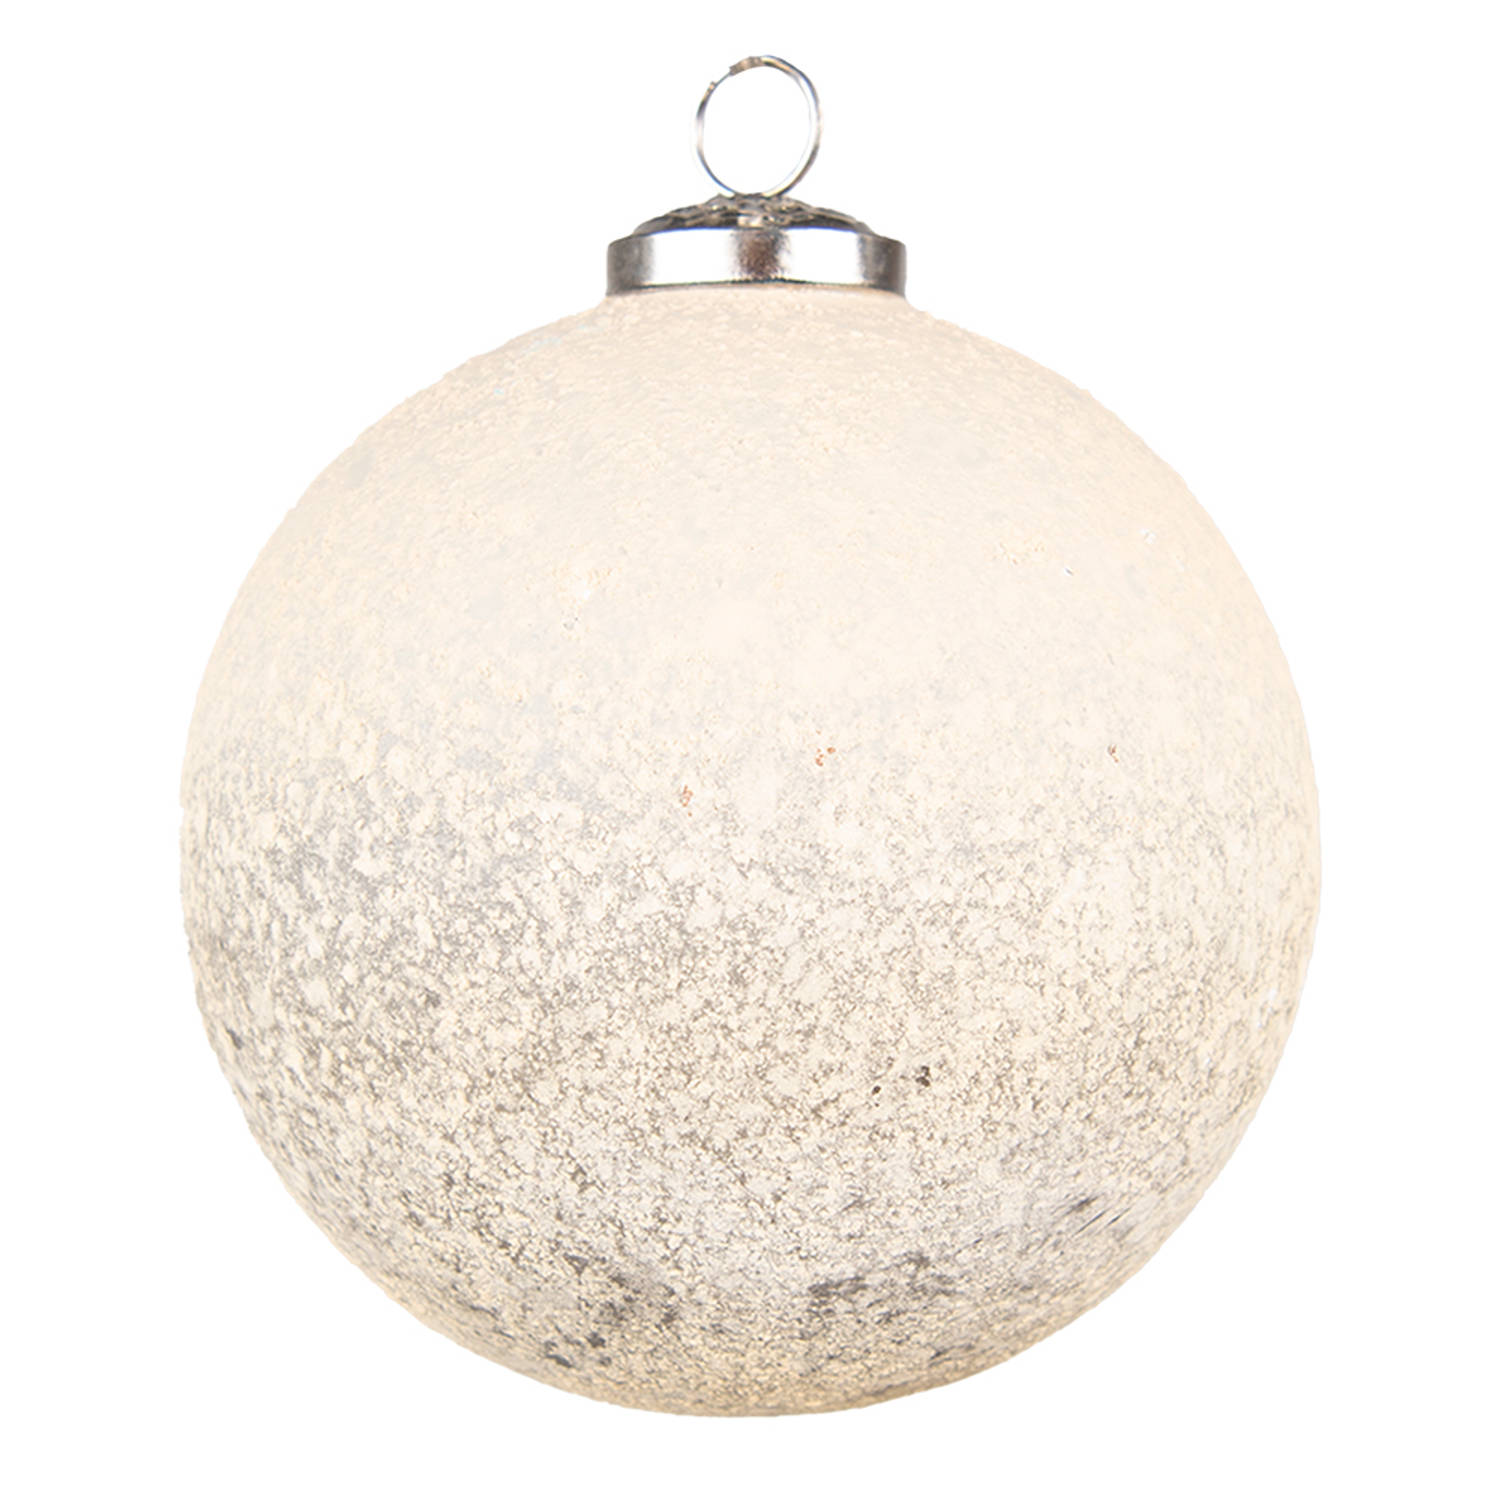 HAES DECO - Kerstbal - Formaat Ø 12x12 cm - Kleur Beige - Materiaal Glas - Kerstversiering, Kerstdecoratie, Decoratie Hanger, Kerstboomversiering